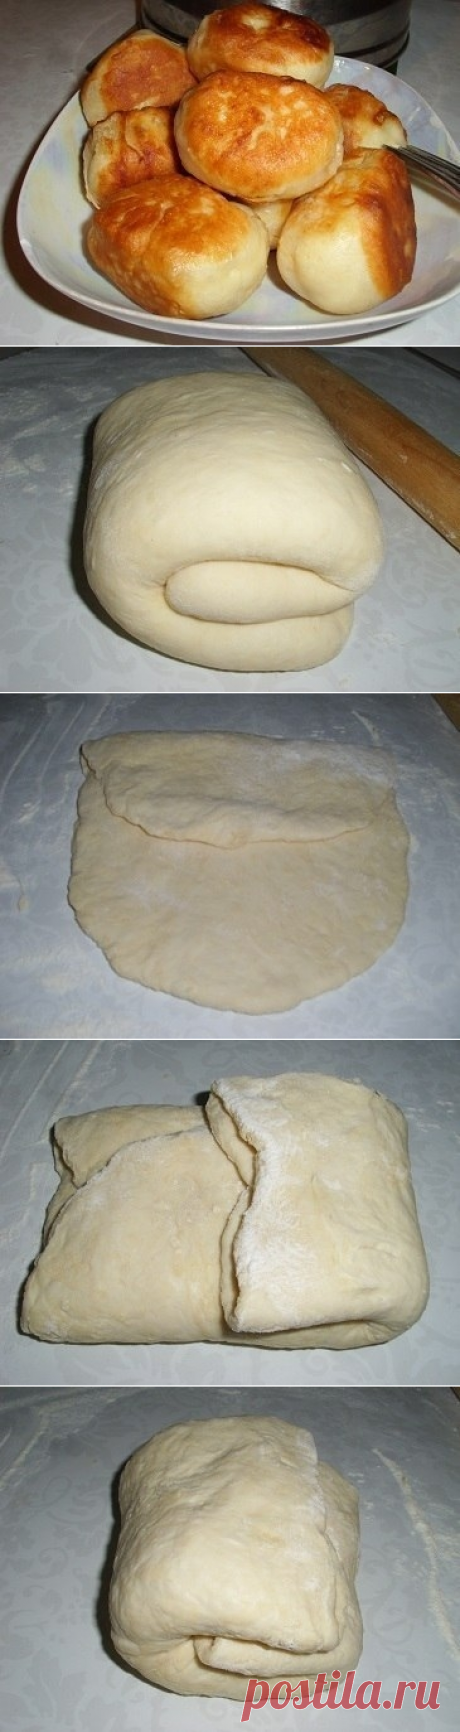 Как приготовить тесто на кефире для пирожков, без дрожжей. - рецепт, ингредиенты и фотографии